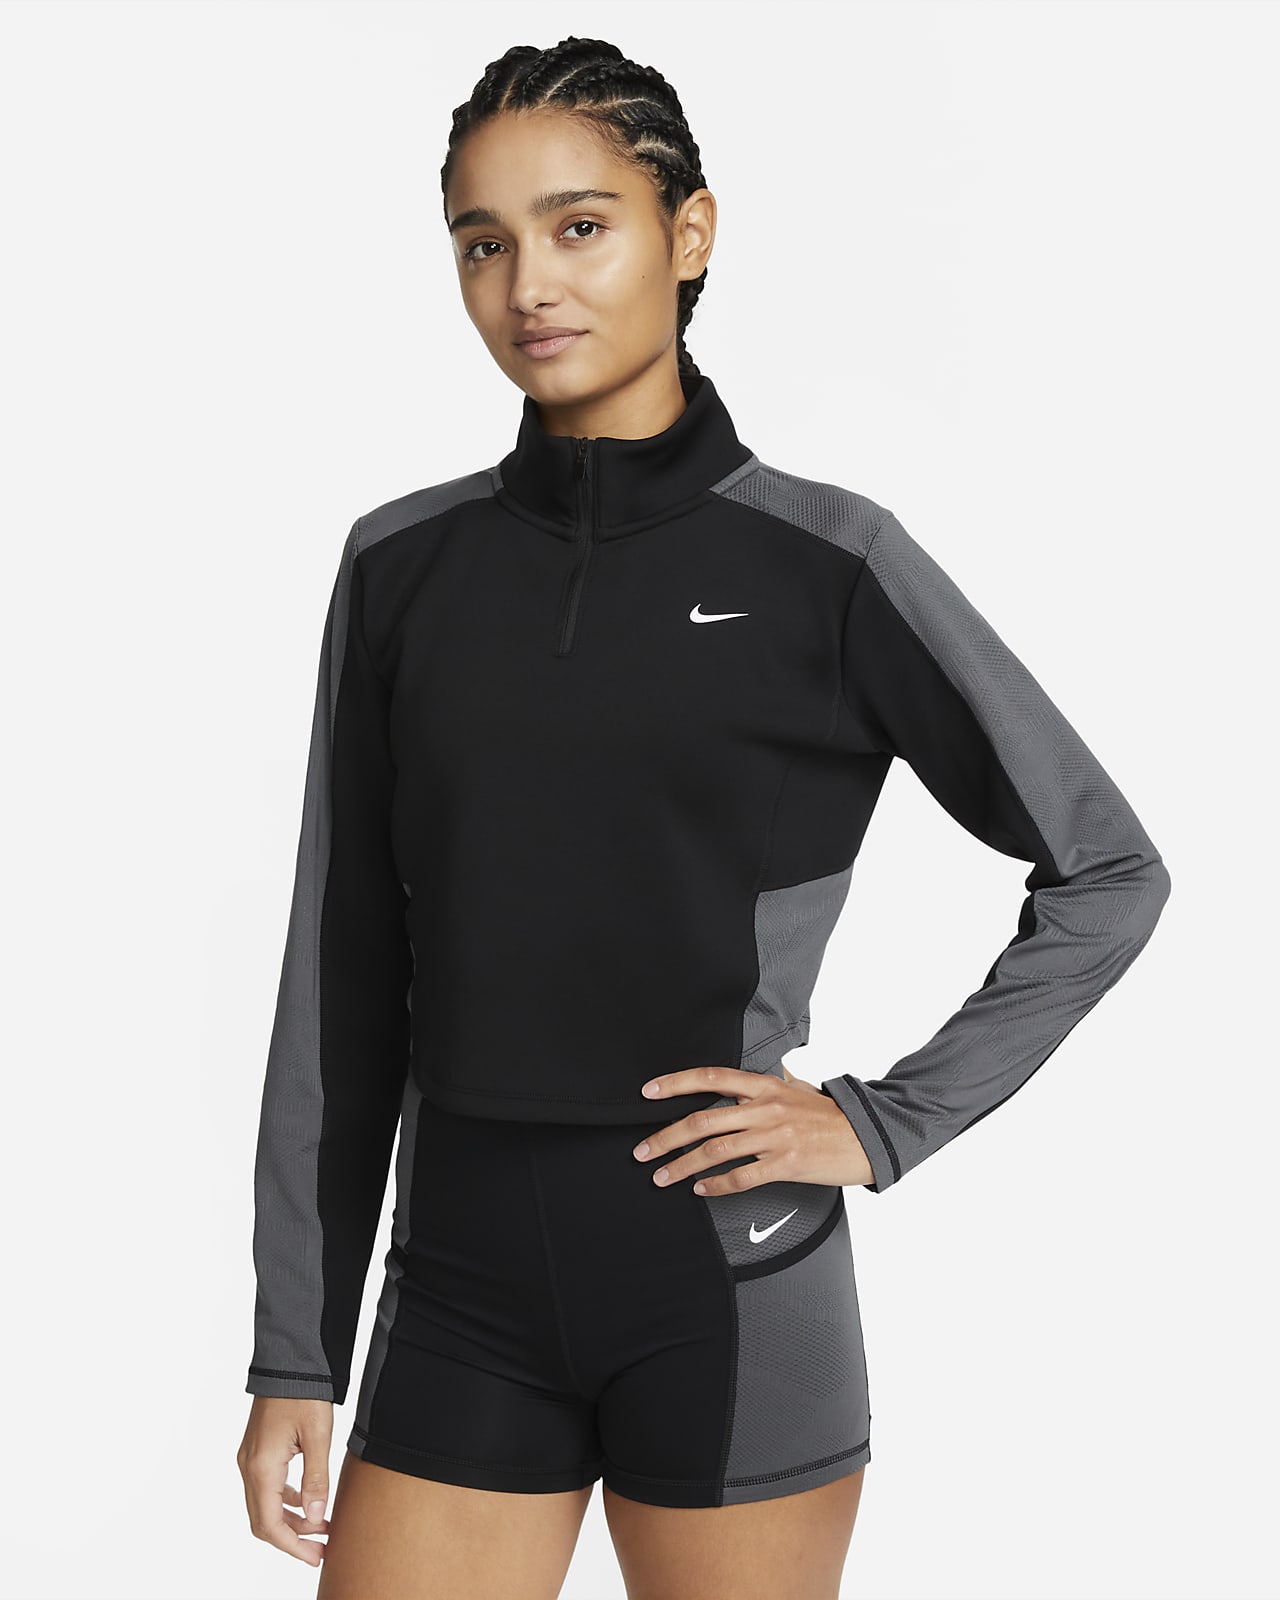 Nike Dri-FIT Women's Long-Sleeve 1/4-Zip Top. LU